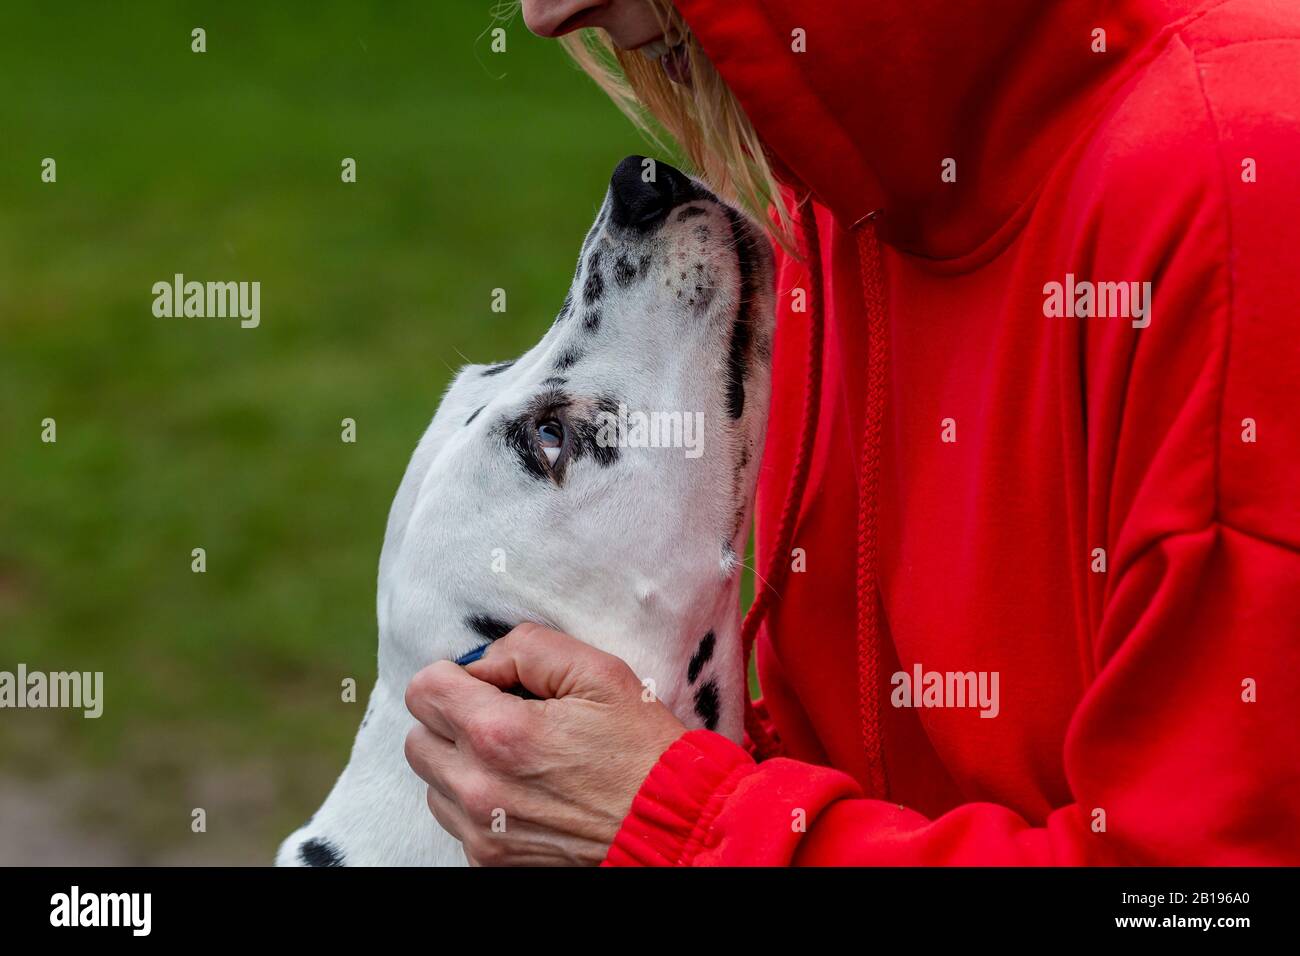 Une Dalmation en faisant un fuss de sa femme propriétaire, portrait de chien pris à Abington Park, Northampton, Angleterre, Royaume-Uni. Banque D'Images